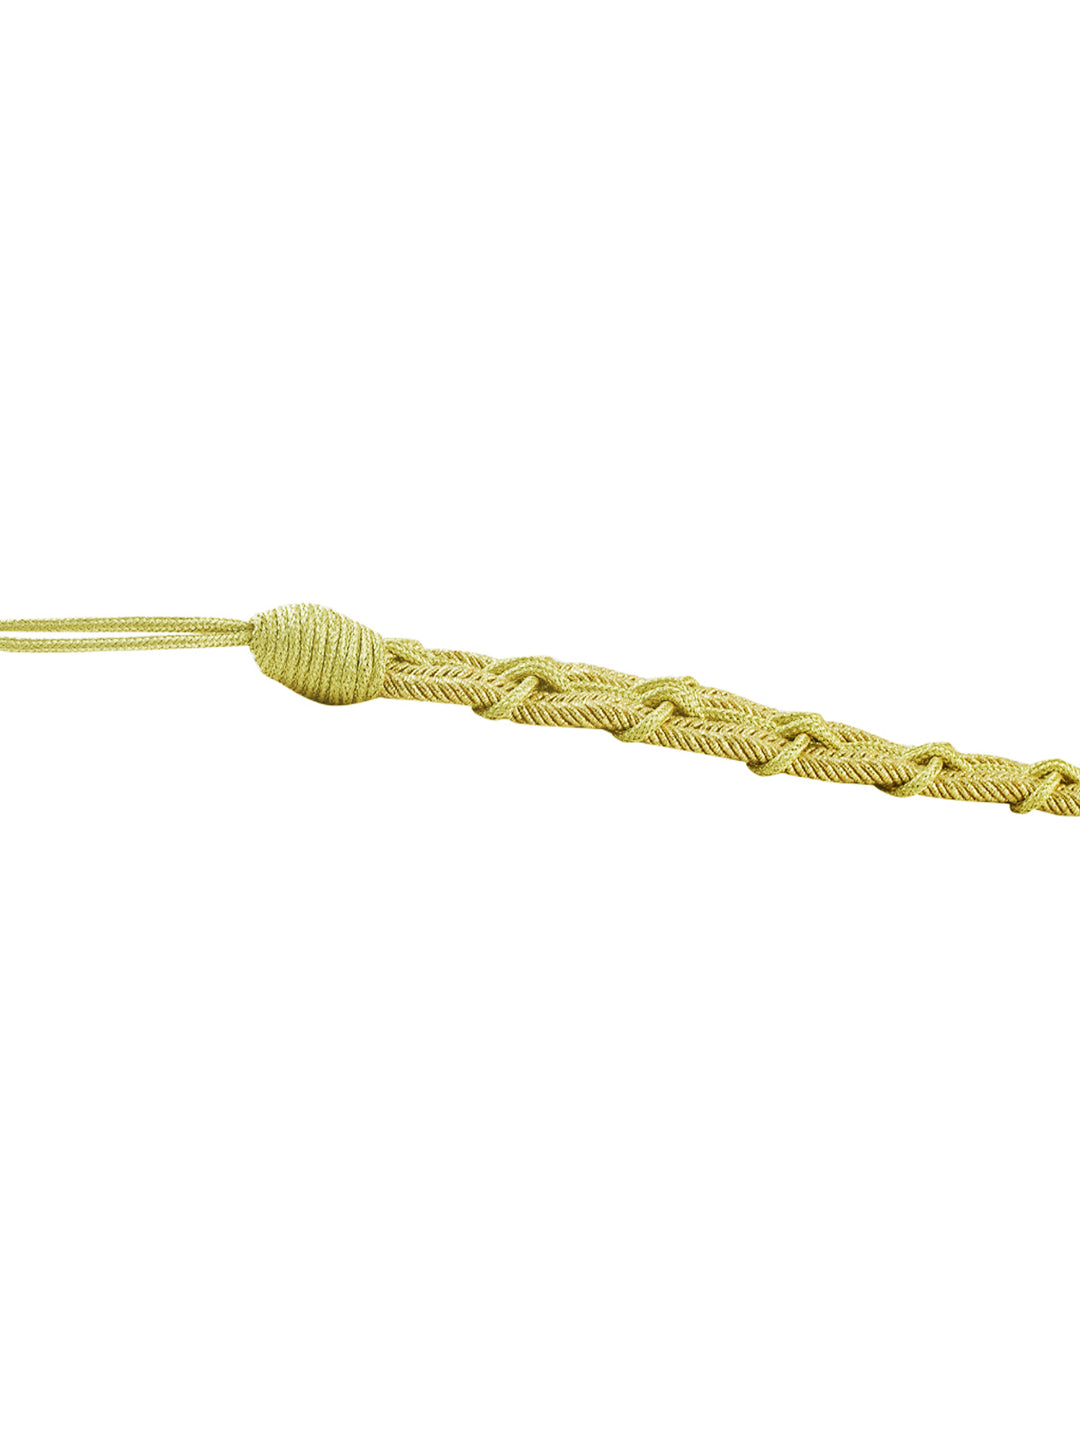 Metallic Gold Braided Rope Tassel Waist Belt for Men/Women